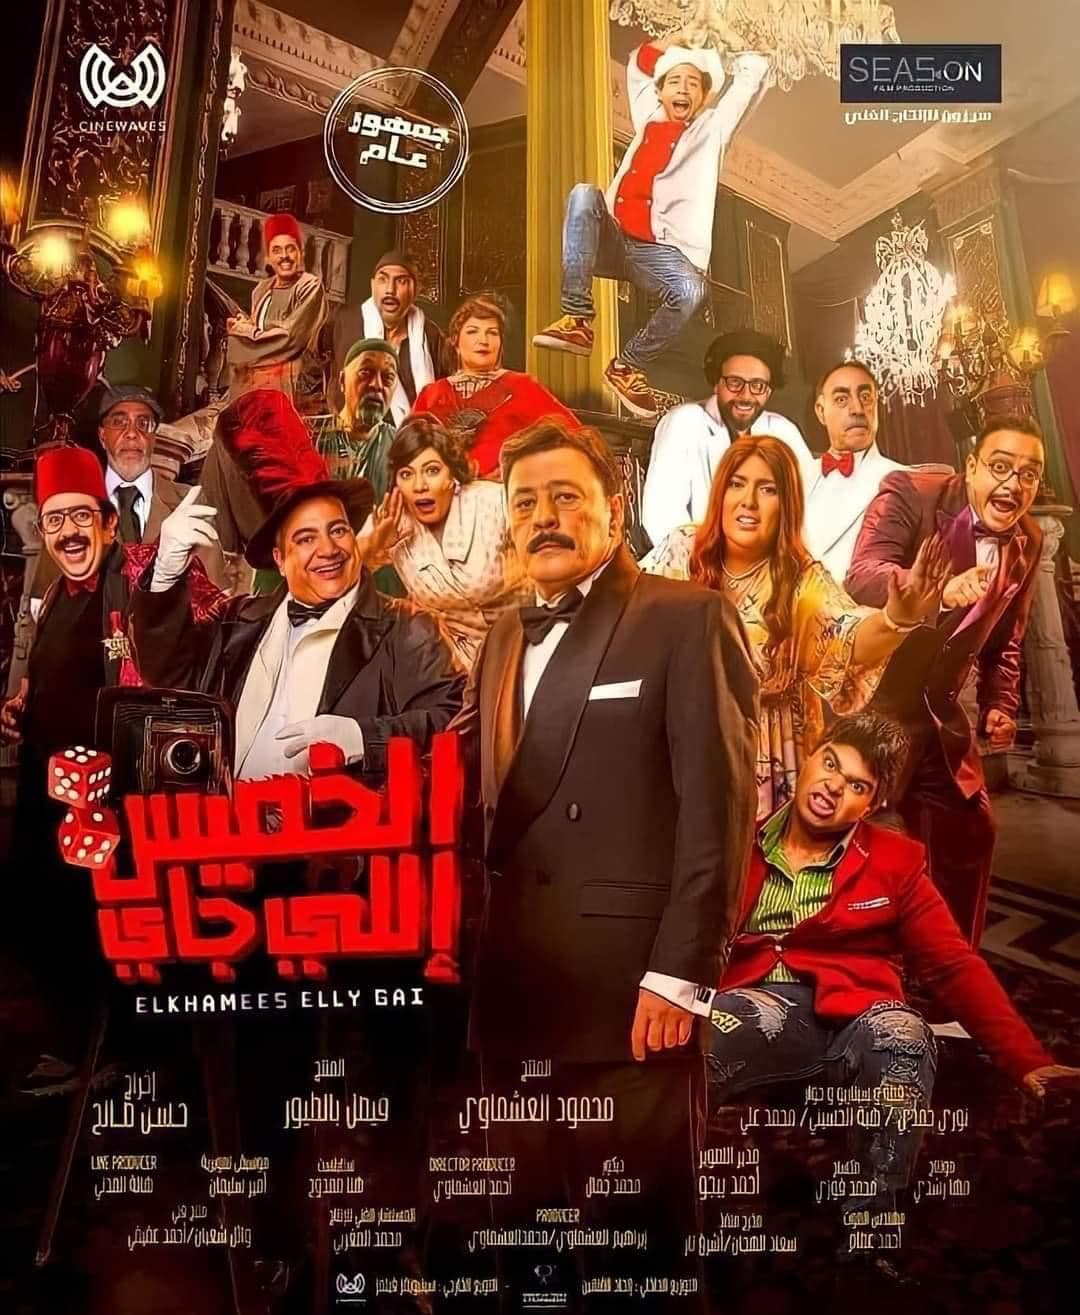 فيلم "الخميس اللي جاي" يحصد 335 ألفًا و200 جنيه خلال يومي عرض - اليوم السابع